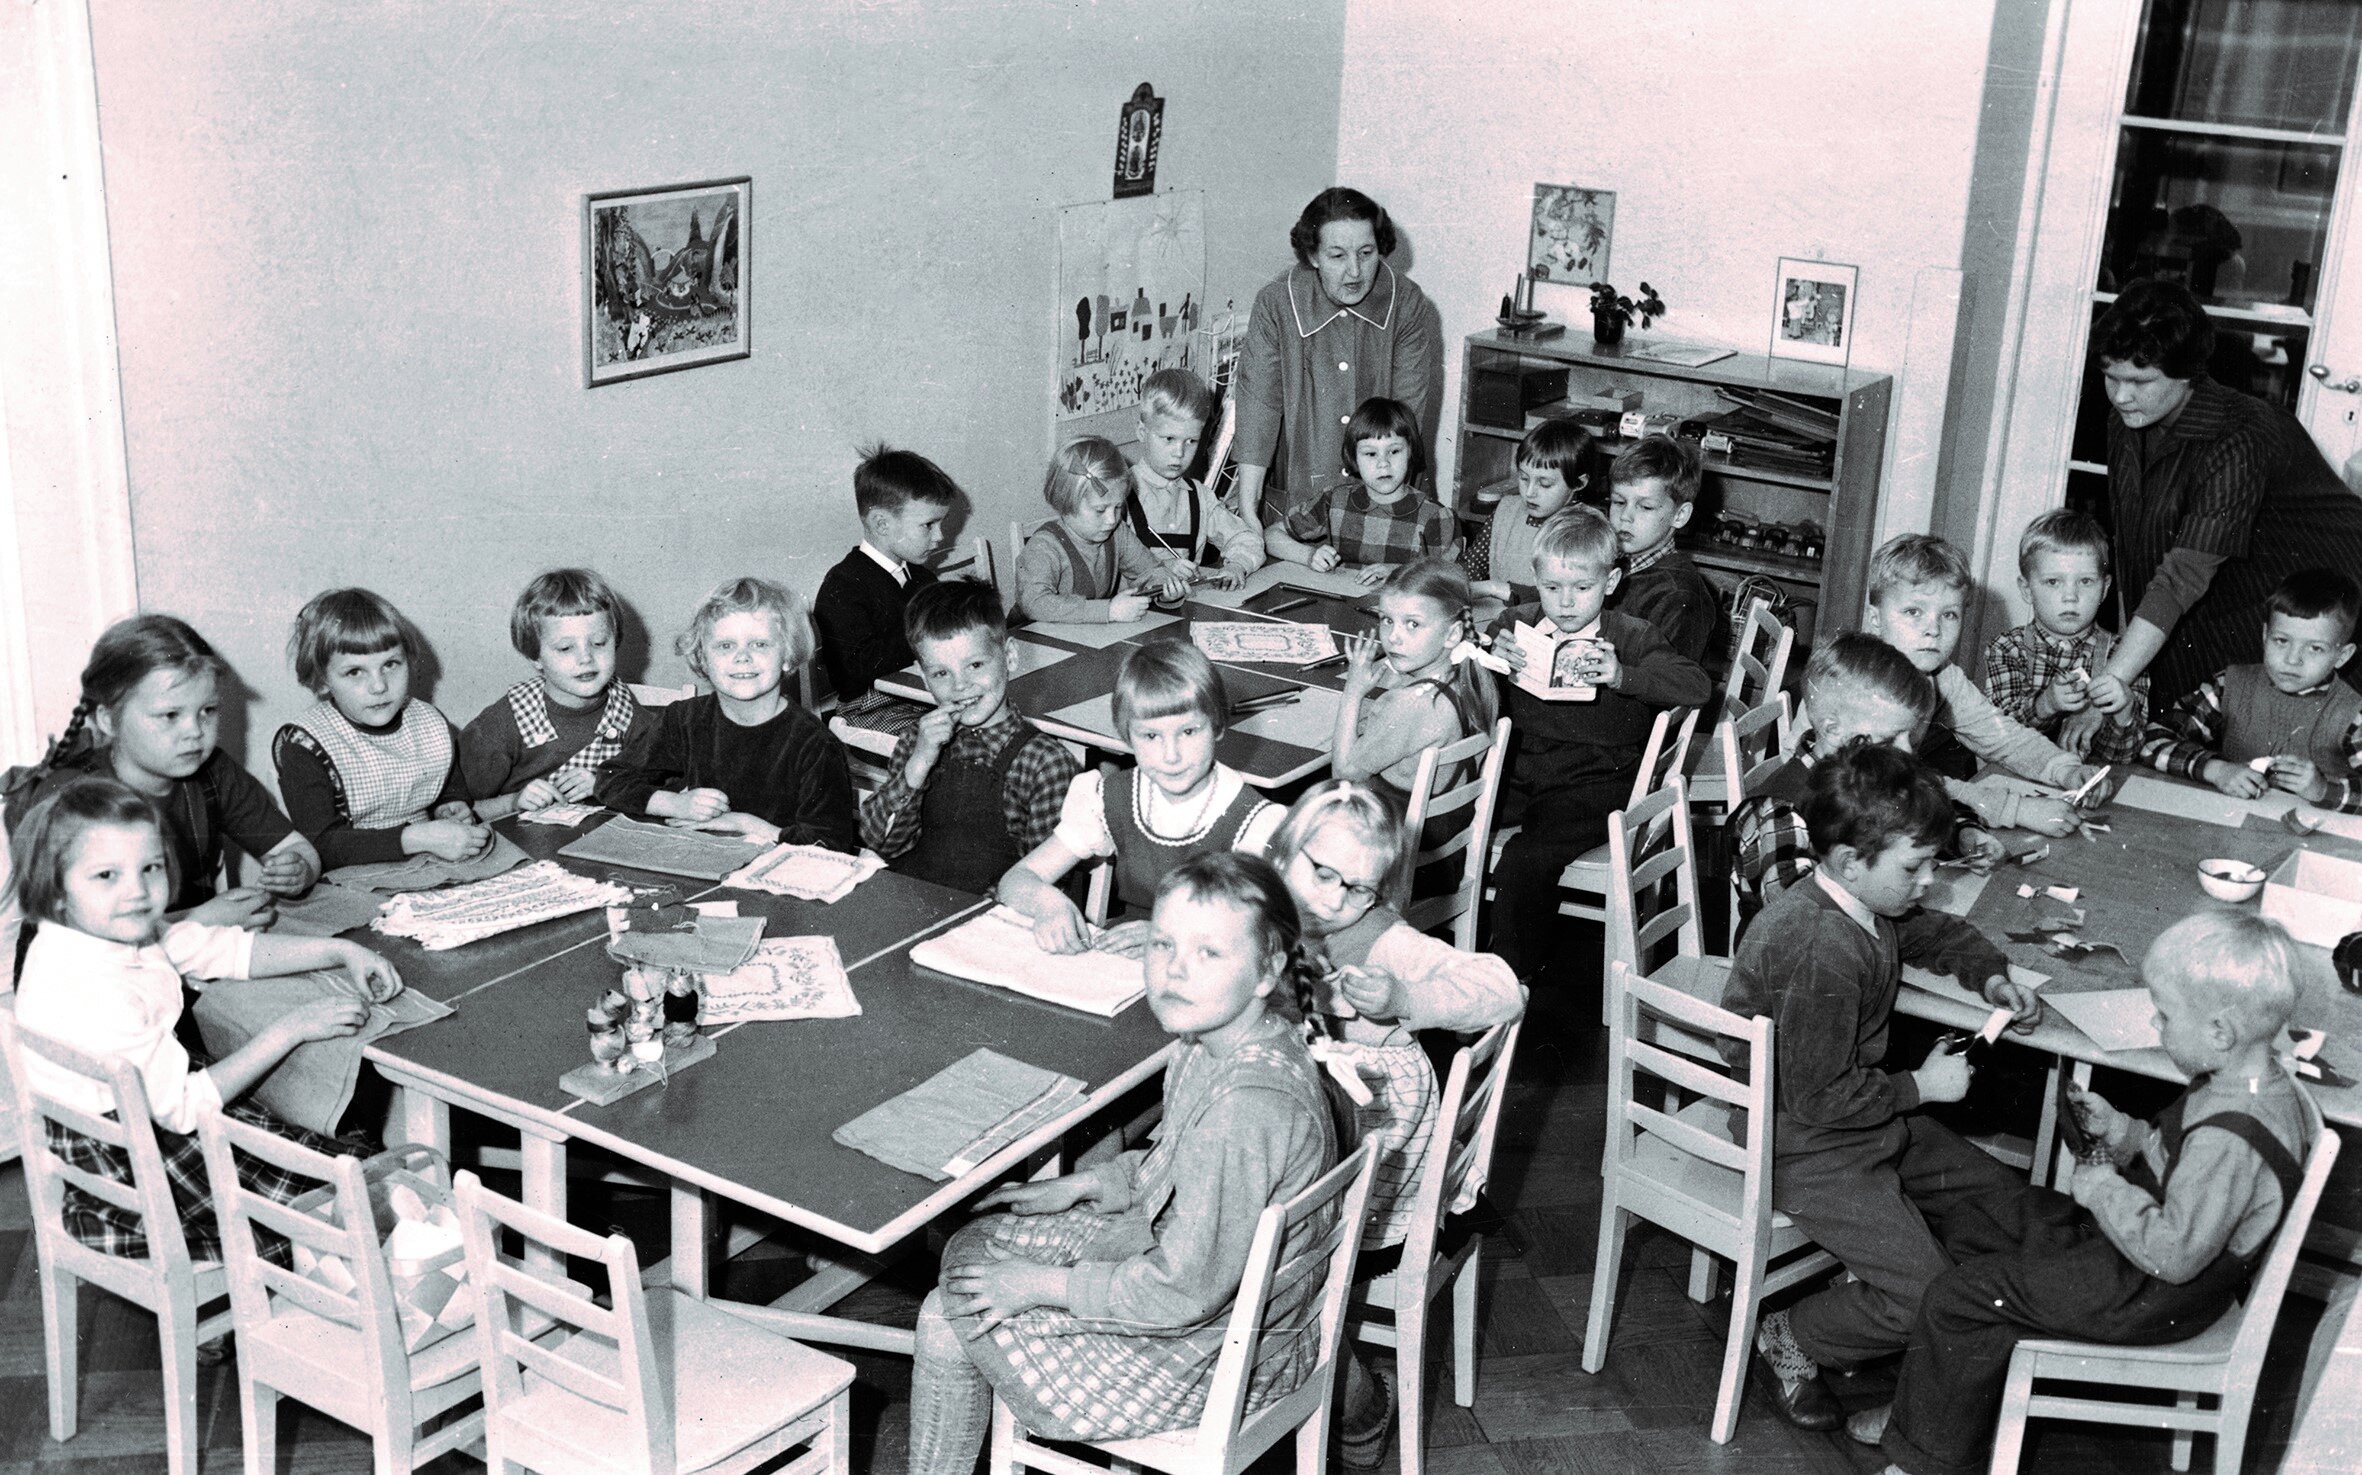 Kuva 2. Ryhmän lapset työskentelevät pöytien ääressä yhdessä huoneessa aikuisten valvonnan alla vuonna 1954. Kuva: Lastentarhamuseon kuvakokoelma.